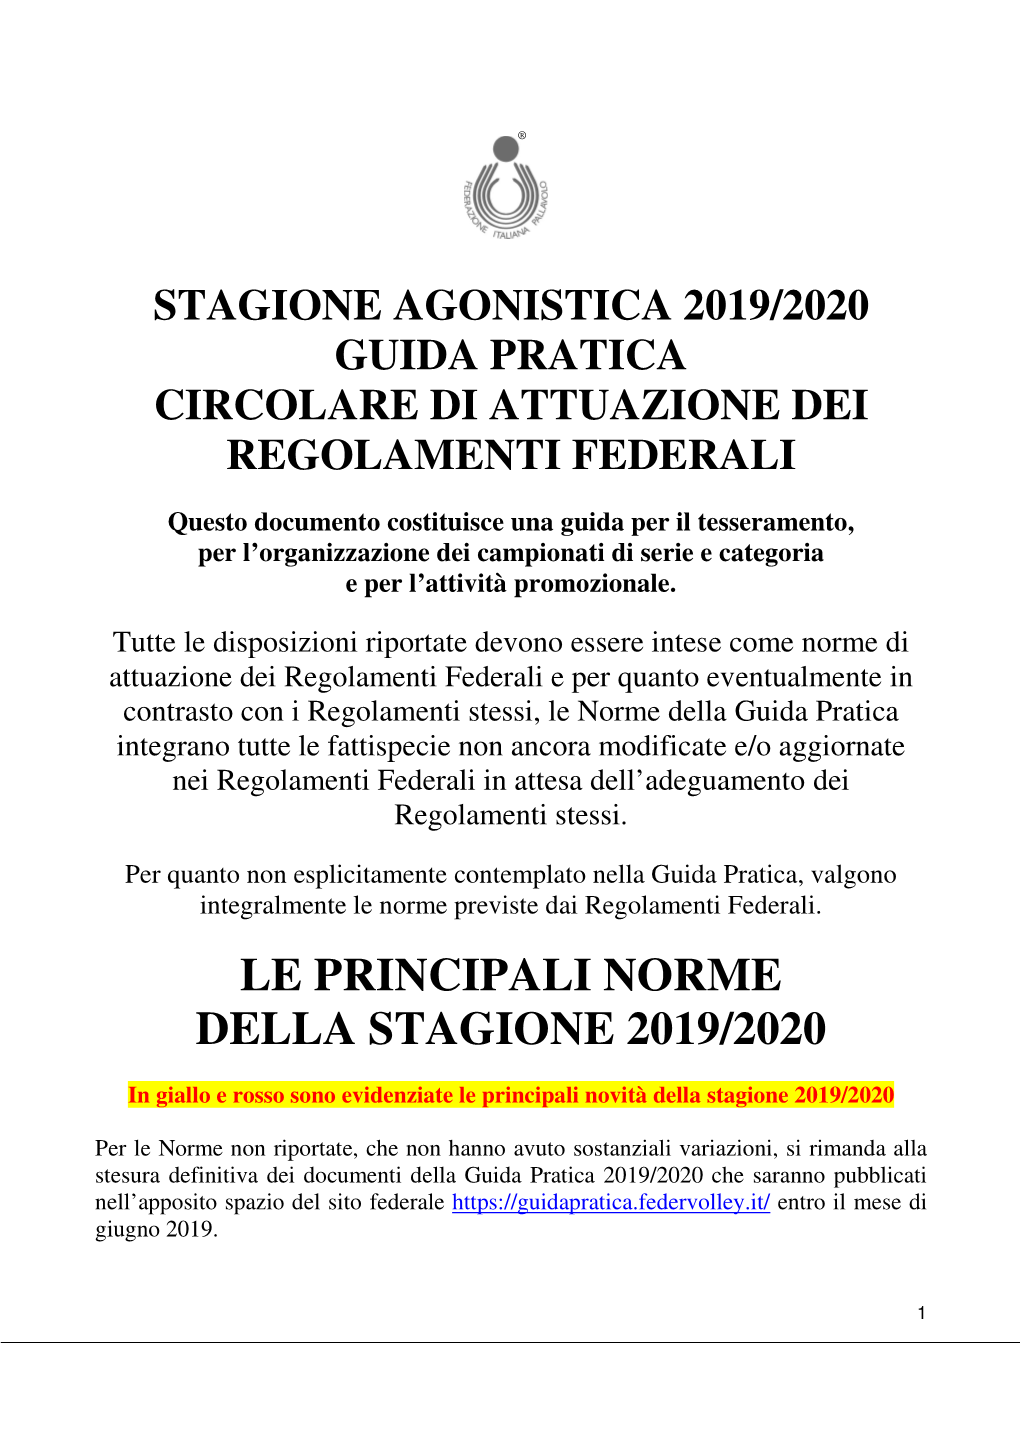 Le Principali Norme Della Stagione 2019/2020